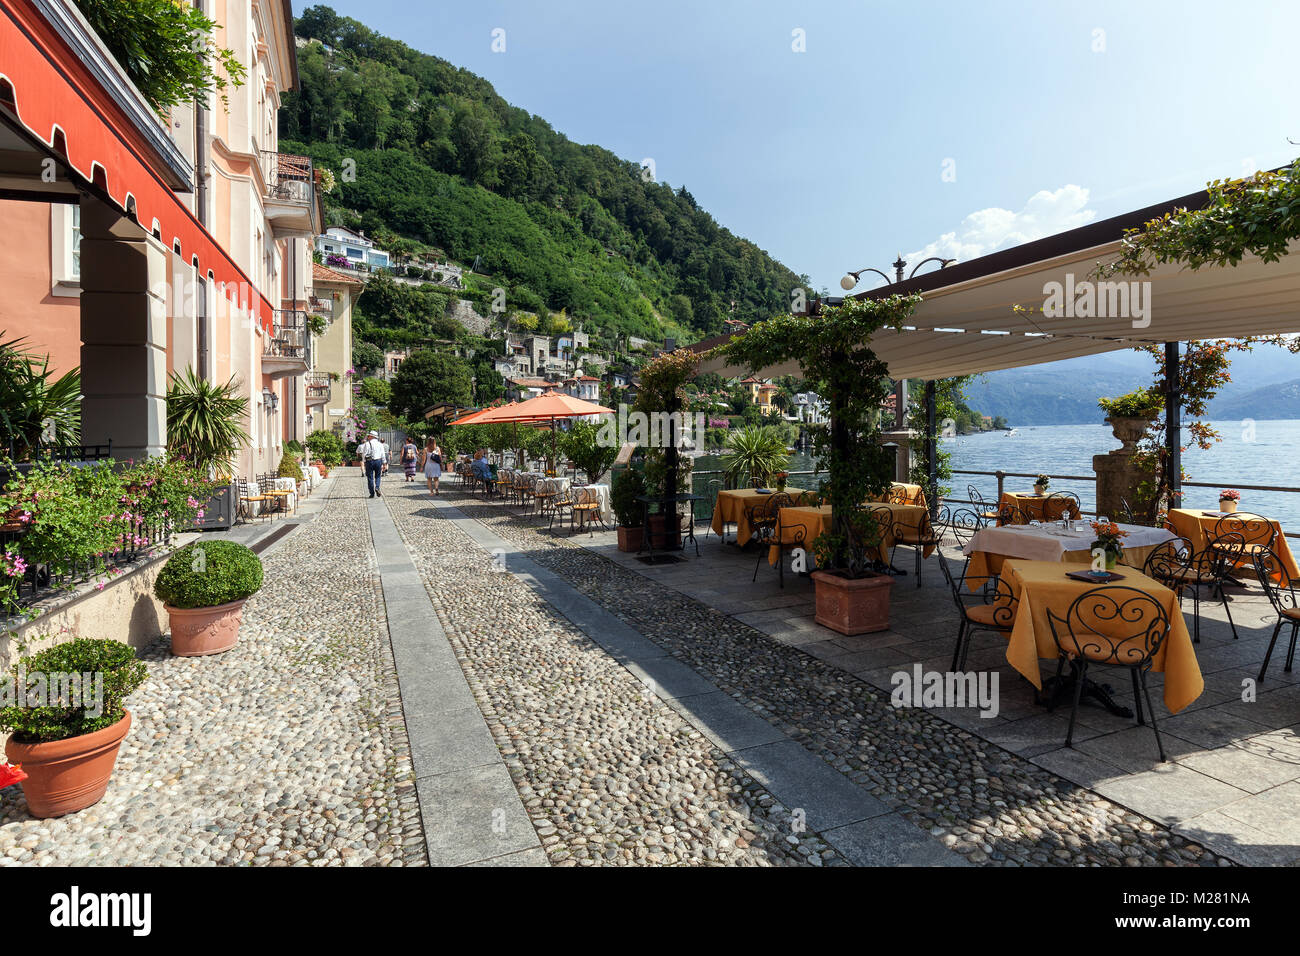 Waterfront with restaurants, Cannero Riviera, Lago Maggiore, Verbano-Cusio-Ossola Province, Piedmont Region, Italy Stock Photo